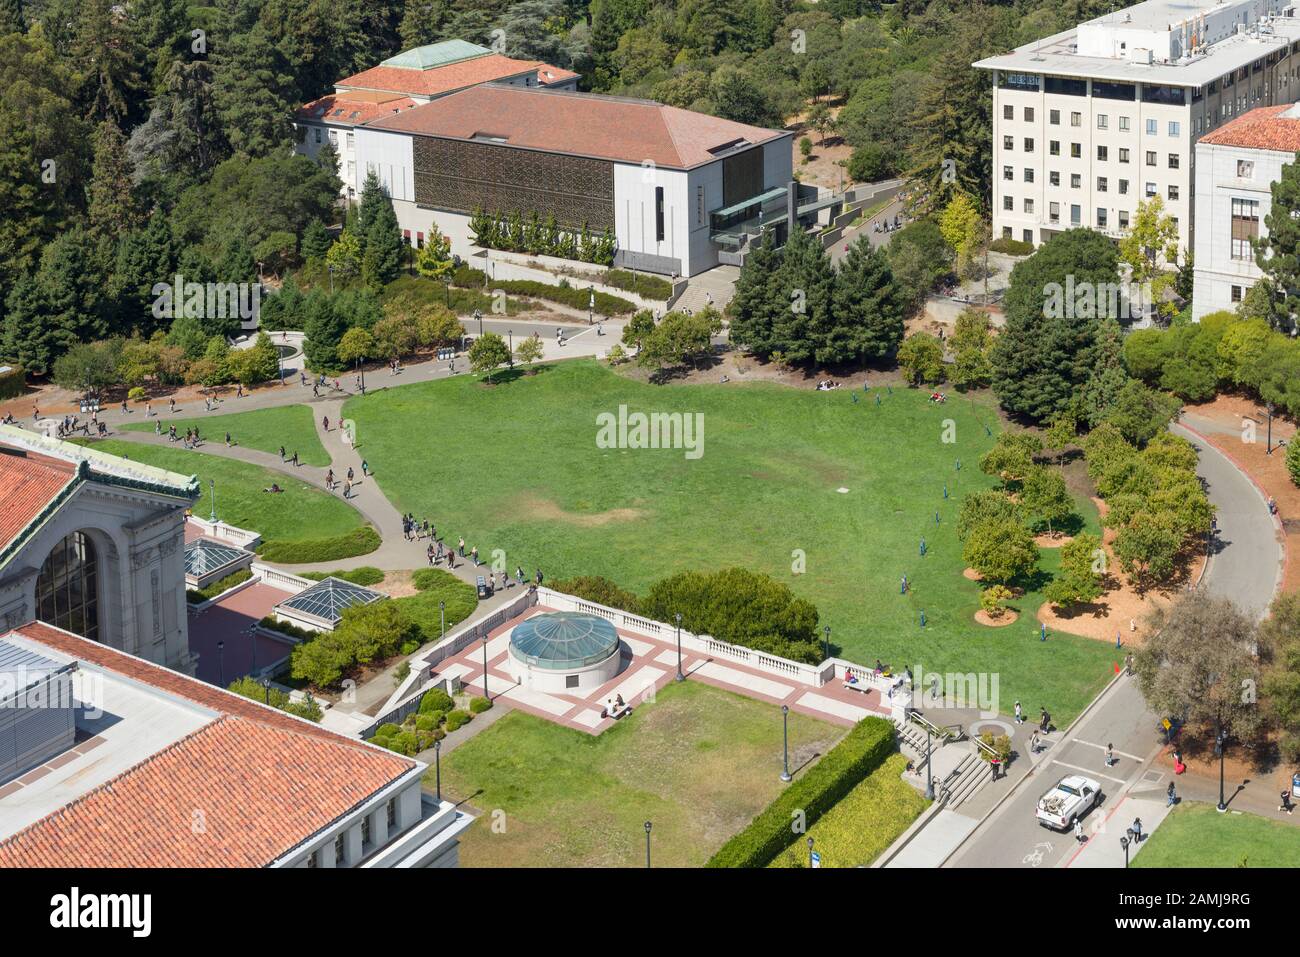 Die University of California, Berkeley (UC Berkeley oder Cal) ist eine öffentliche Forschungsuniversität in Berkeley, Kalifornien, USA. Stockfoto